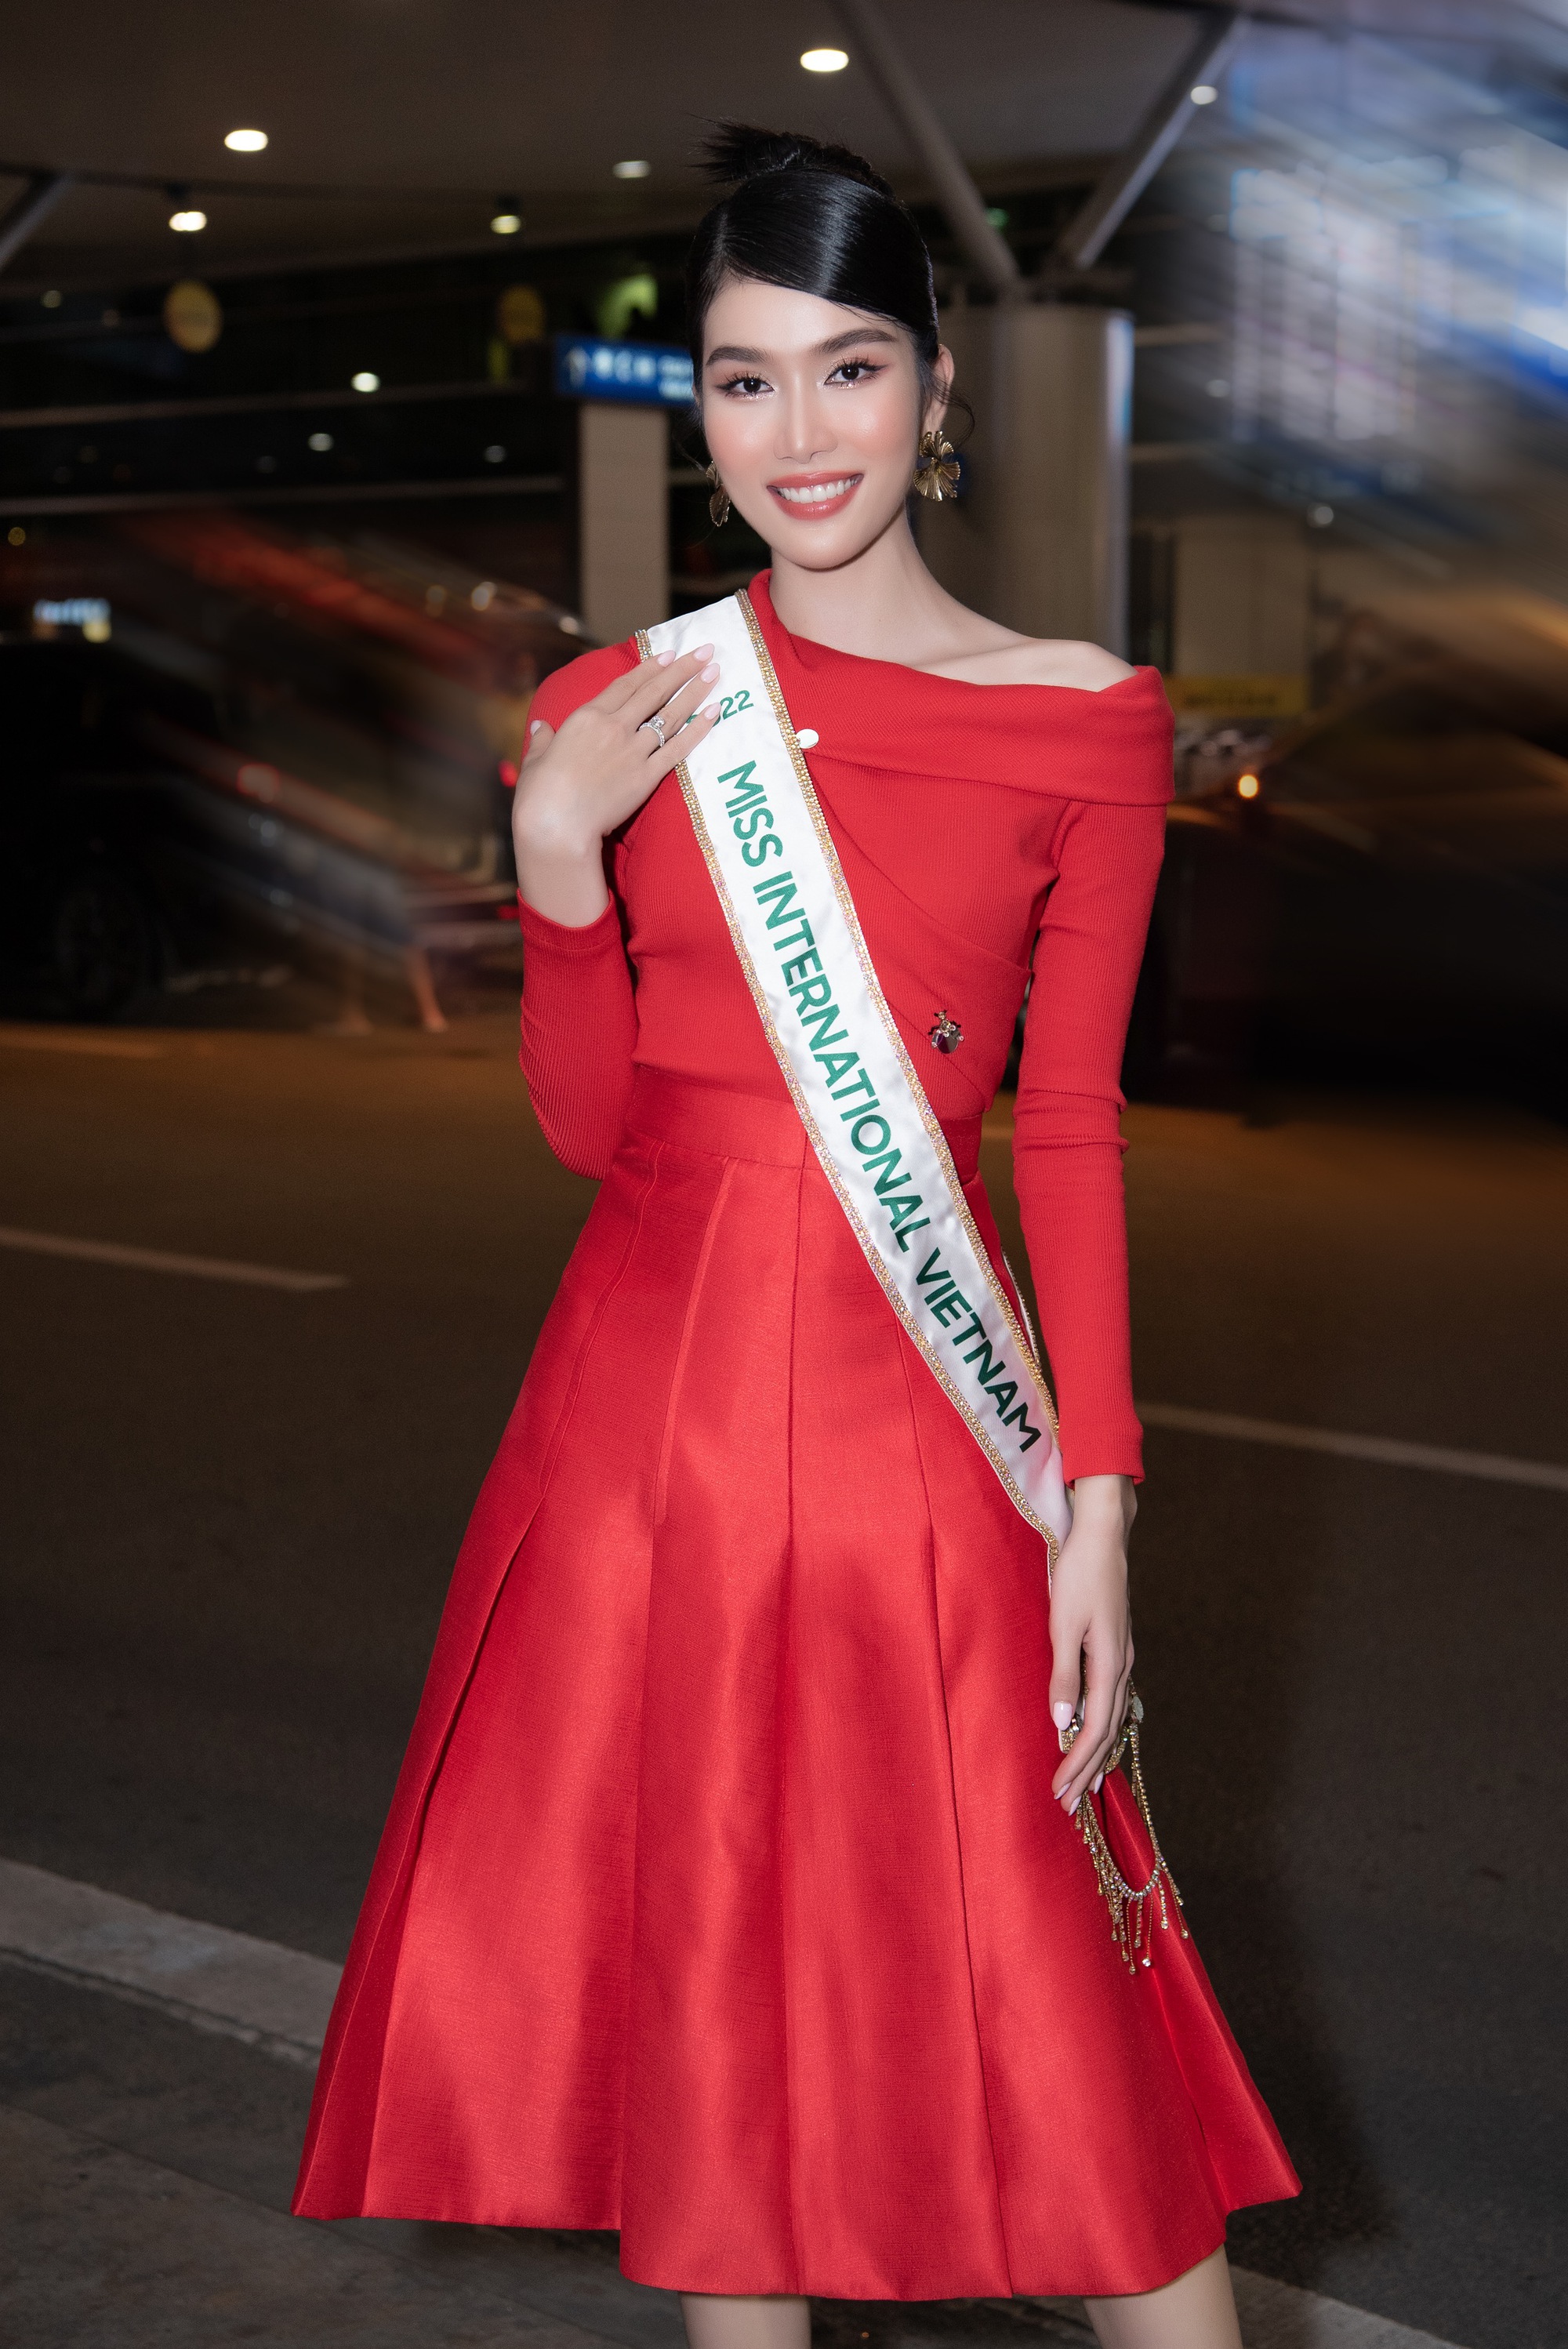 Á hậu Phương Anh xinh đẹp, lôi cuốn trong ngày đi thi Miss International 2022 - Ảnh 4.